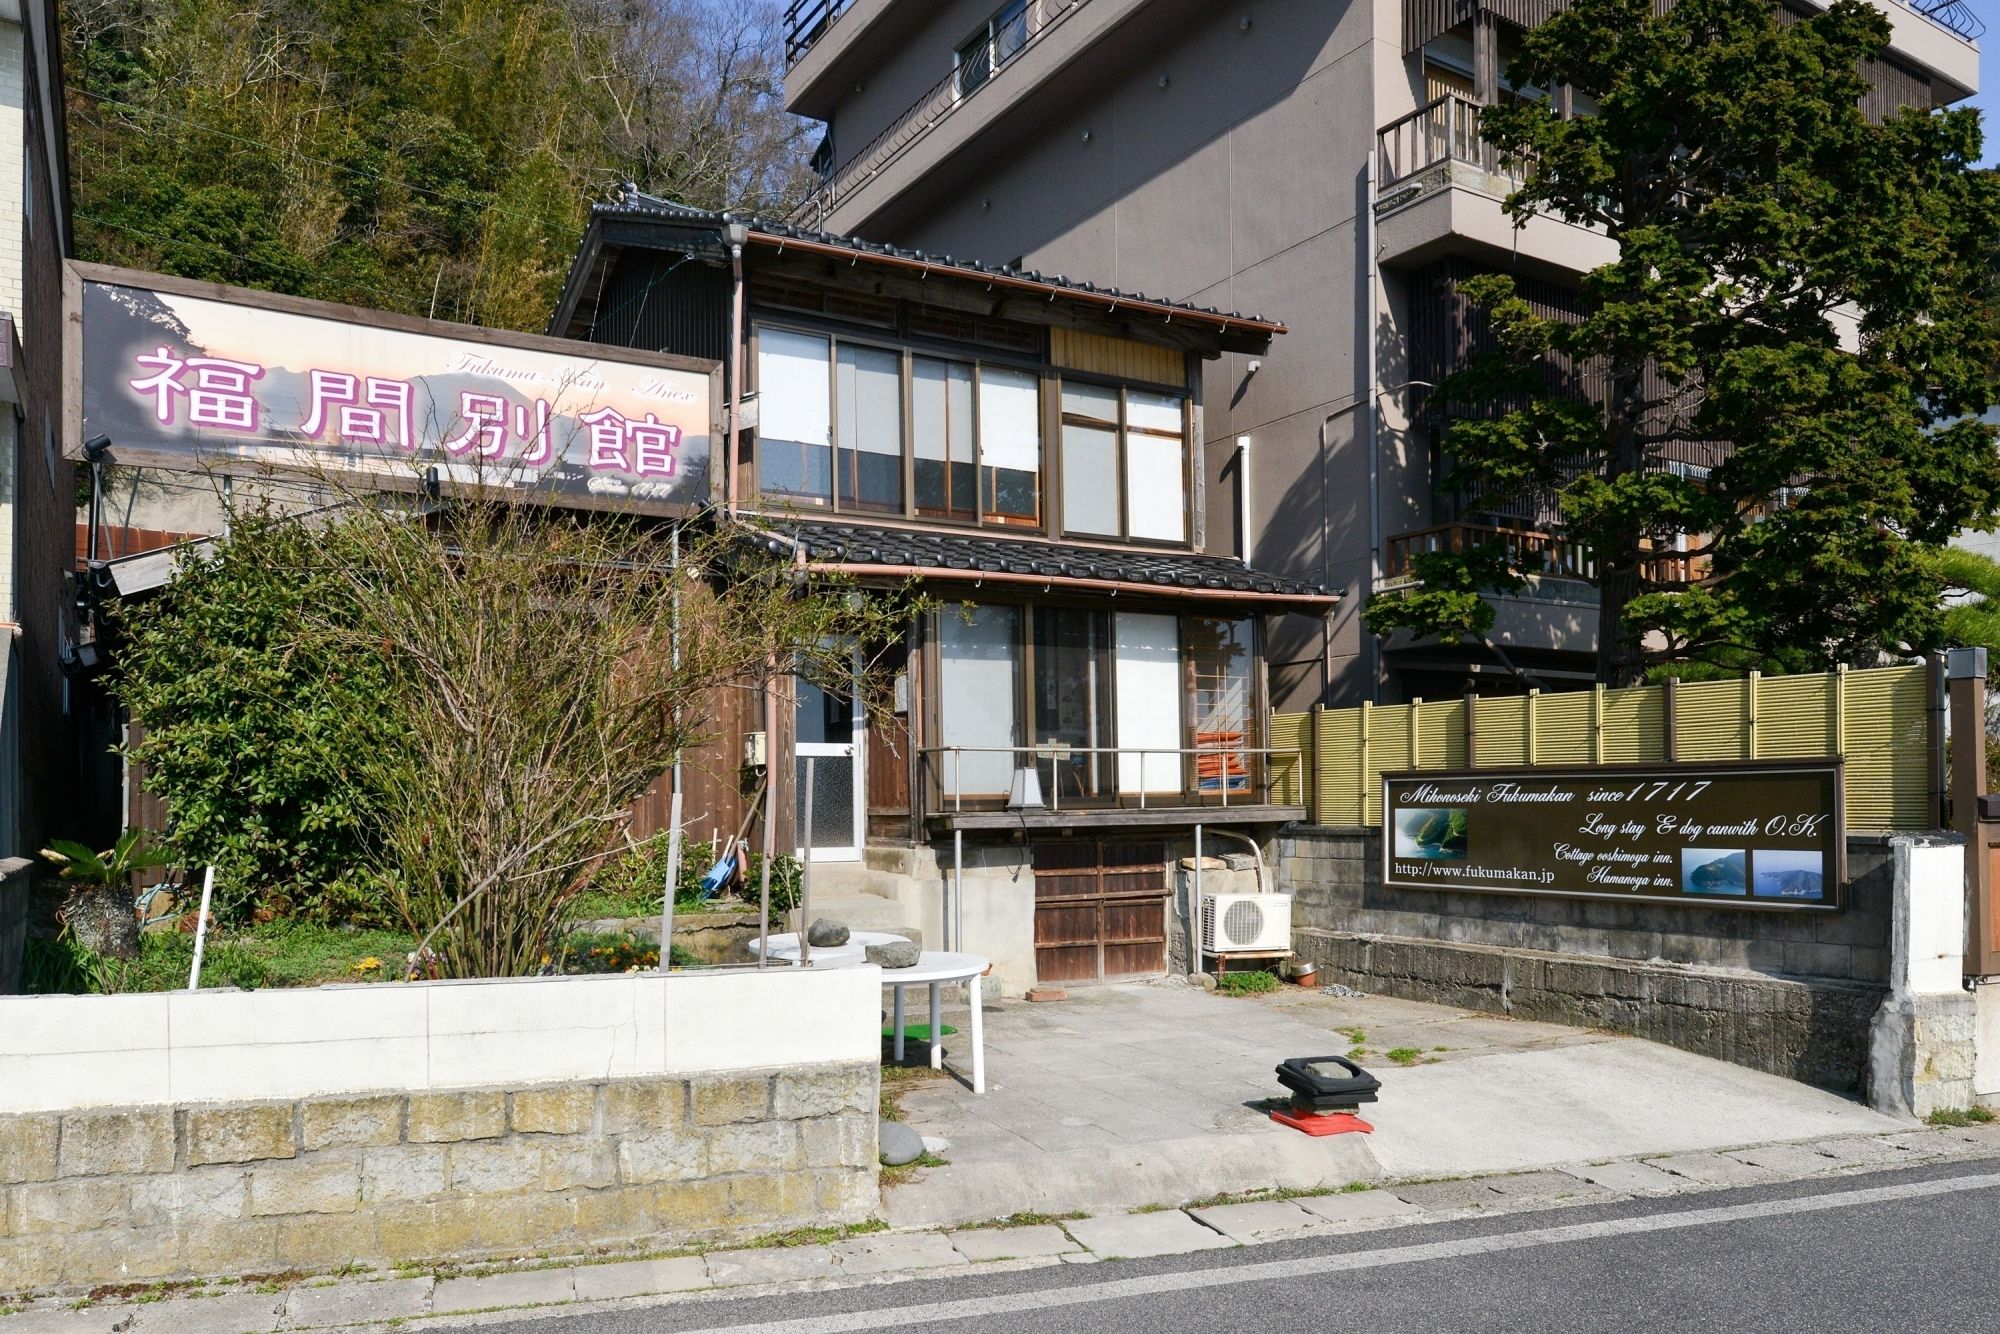 大下舎（おおしもや）　松江市に登録されている歴史的建築物の一棟貸切りの宿。